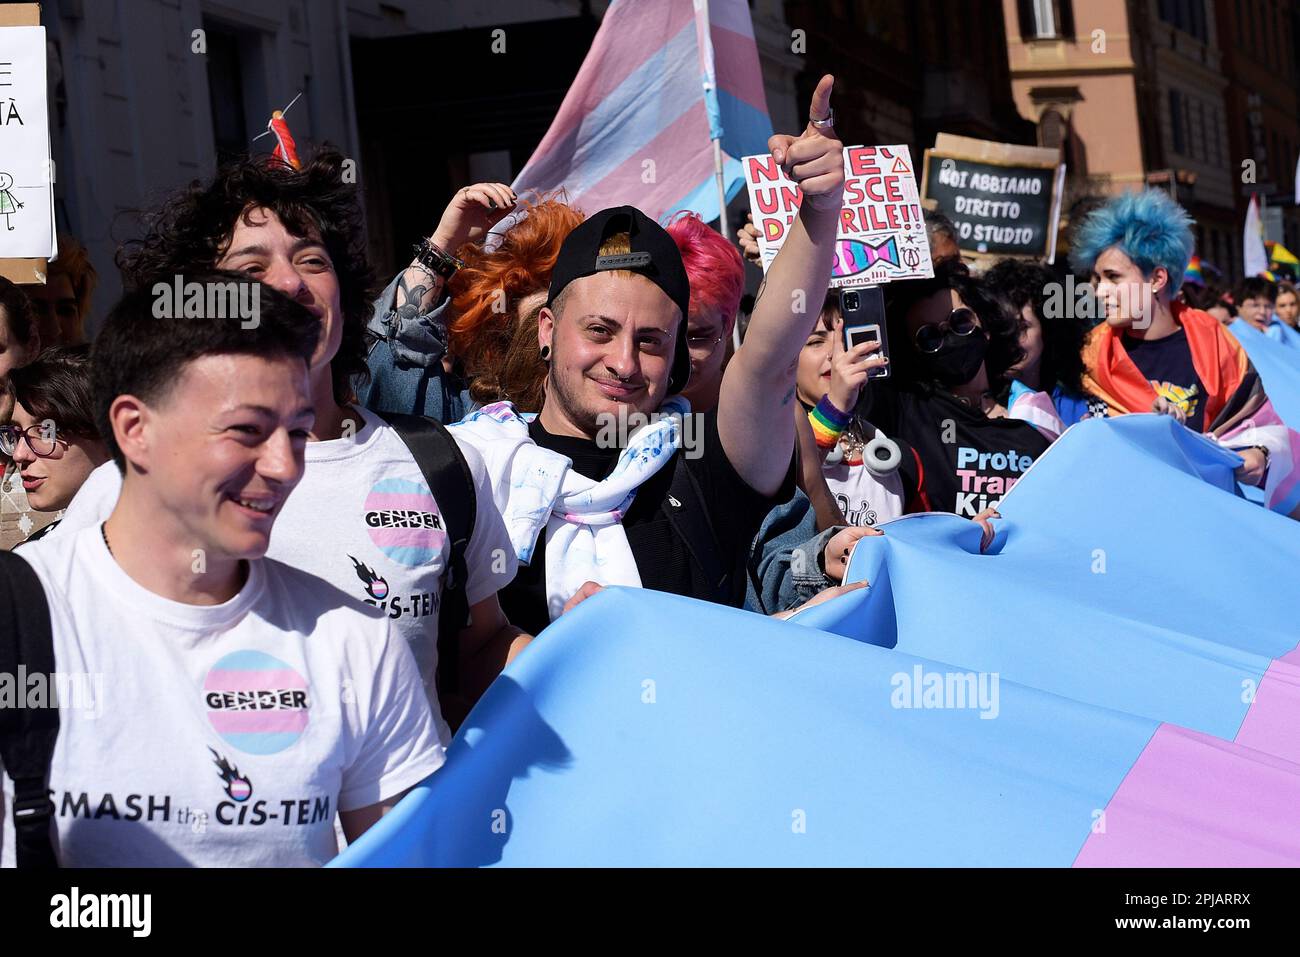 Les gens participent à l'événement de la Journée transgenre de visibilité à Rome, en Italie. Banque D'Images